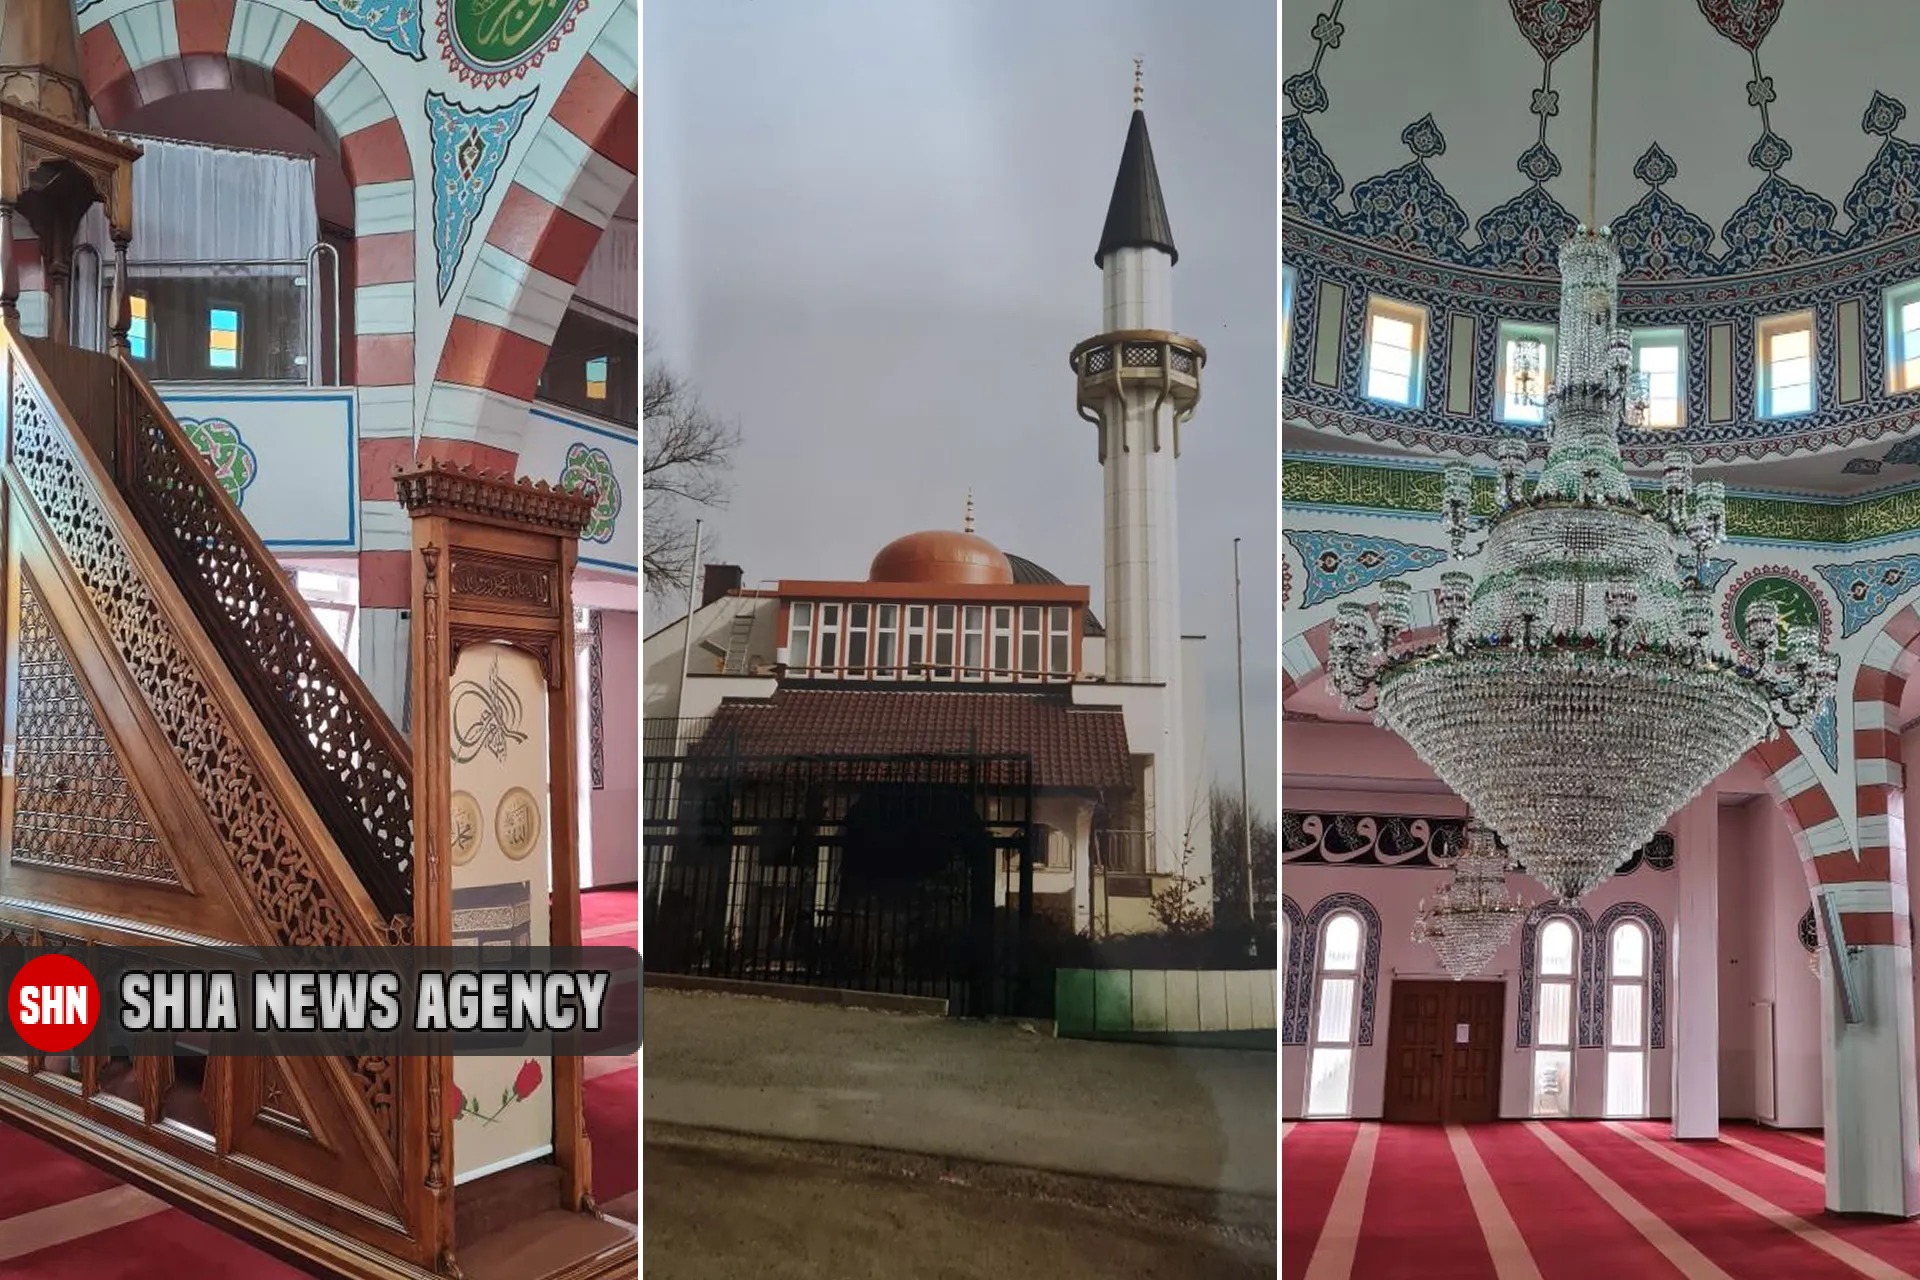 بانگ اذان فراتر از ناقوس کلیساها در آلمان/ روند رو به رشد ساخت مسجد در آلمان